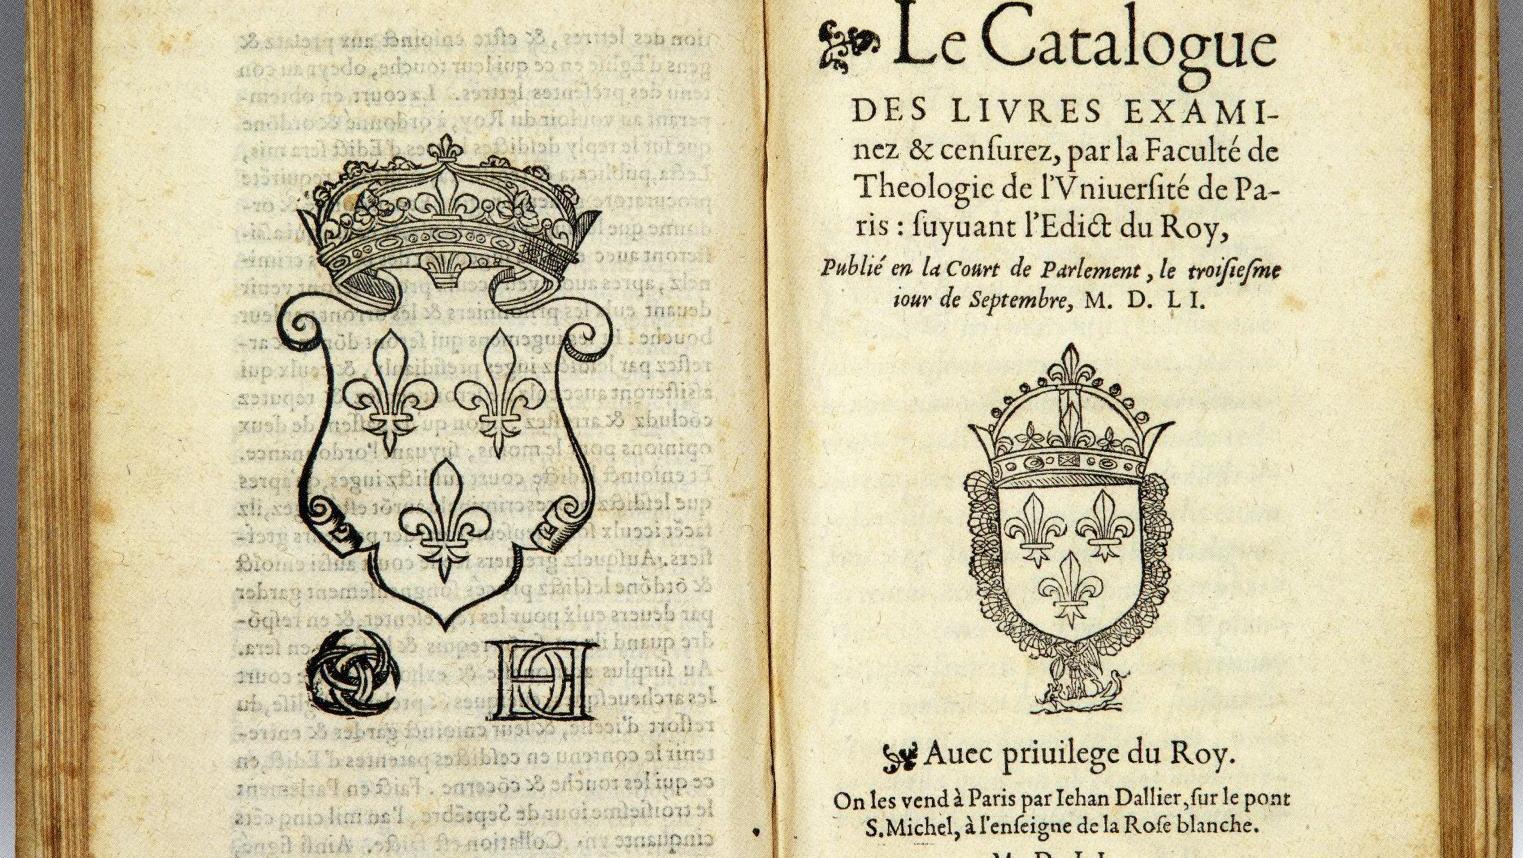 9 677 € frais compris, première refonte des catalogues existants de 1551, relié en... Le coût de la censure